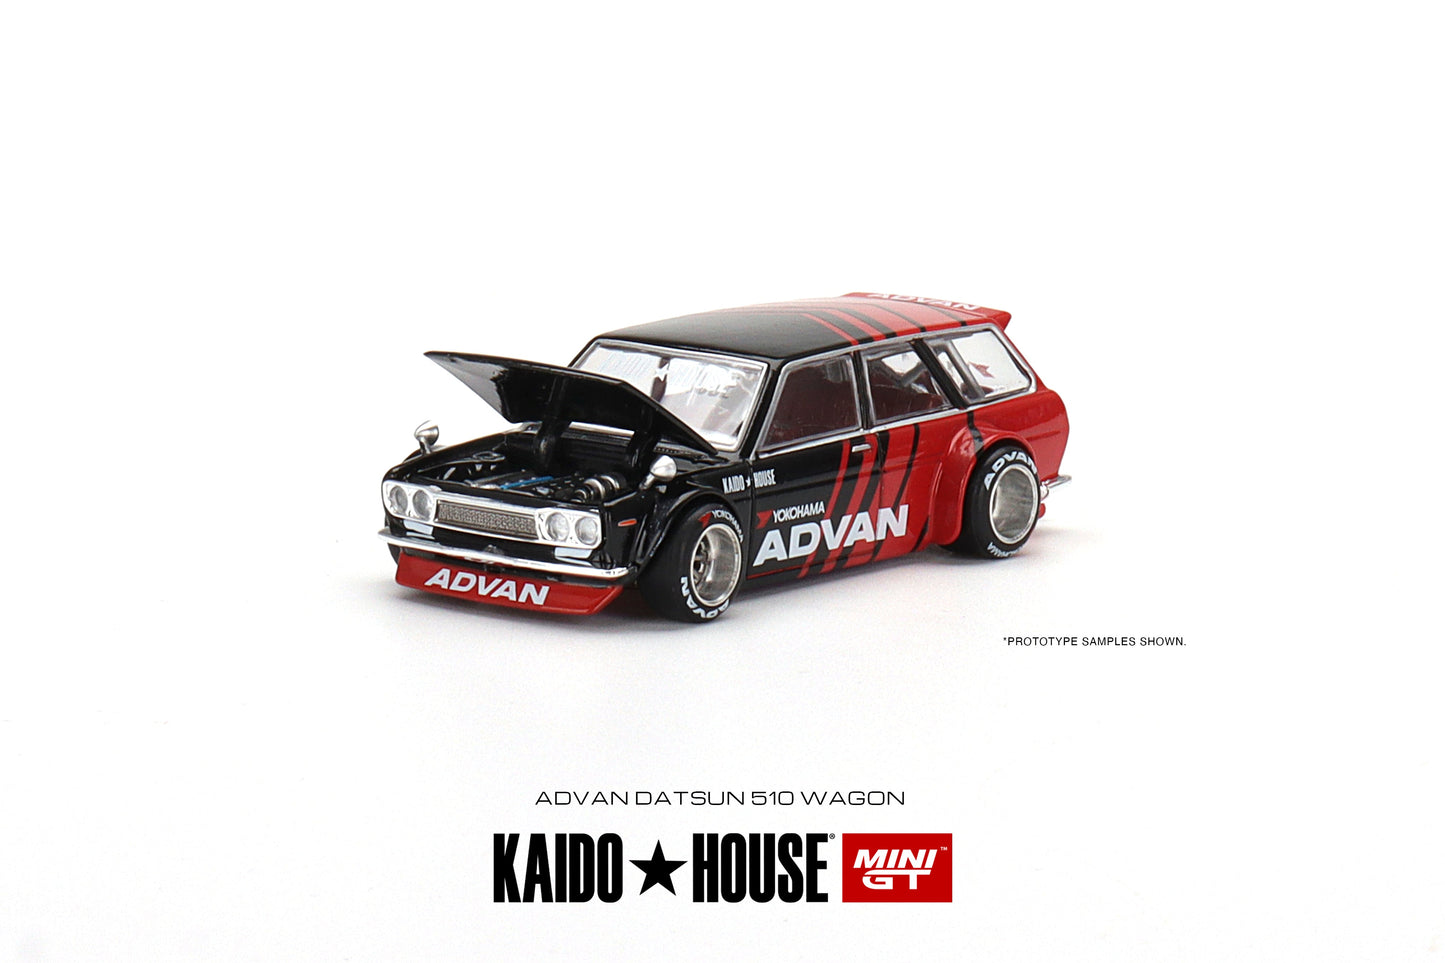 Mini GT X KAIDO HOUSE 1/64 Datsun 510 Pro Street ADVAN ( KHMG032 )